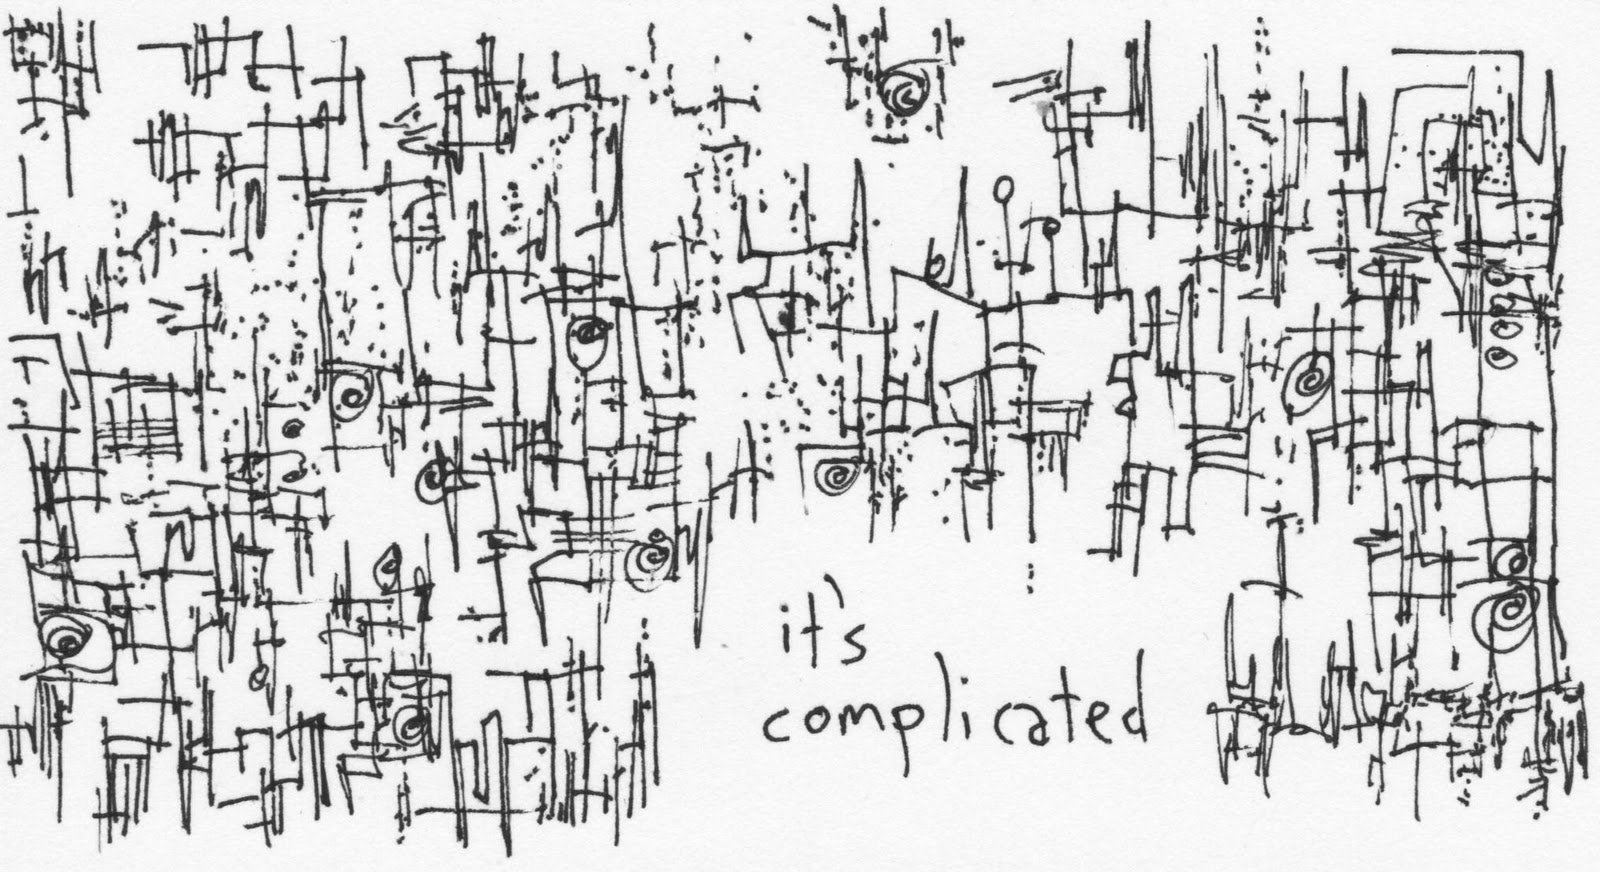 L.E.R.: It's Complicated